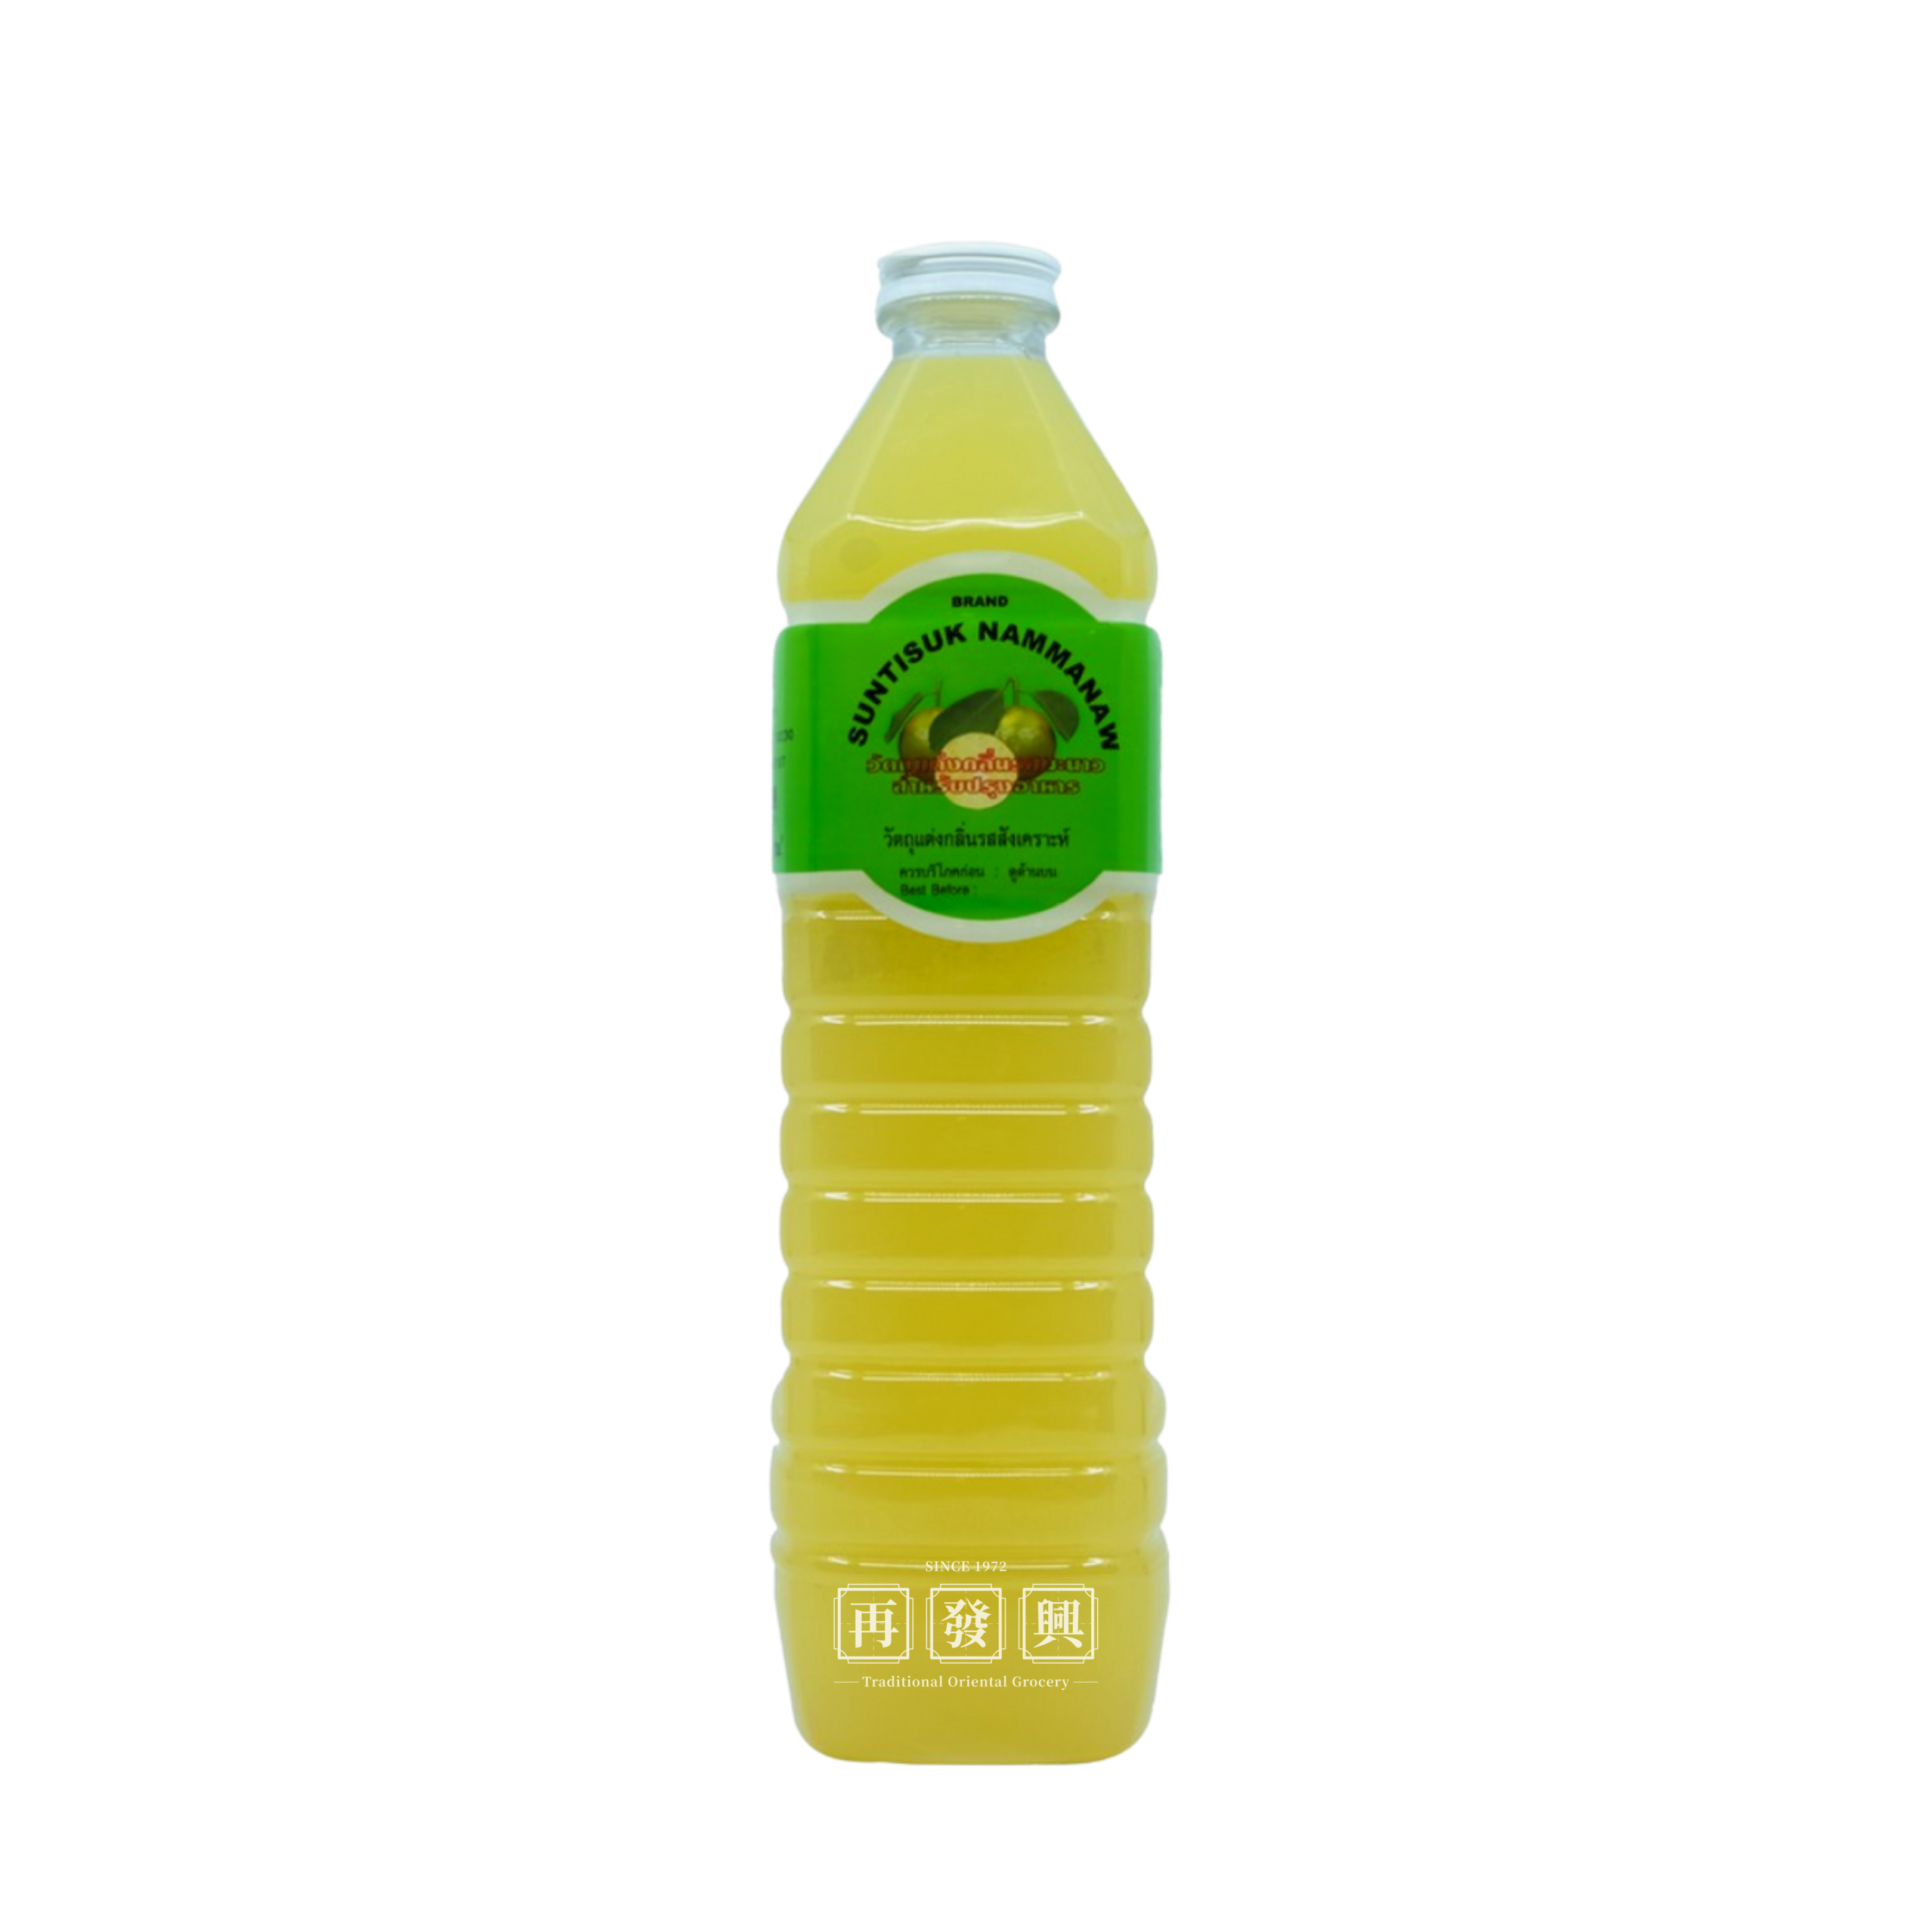 Suntisuk Nammanaw Lime Juice 1ltr